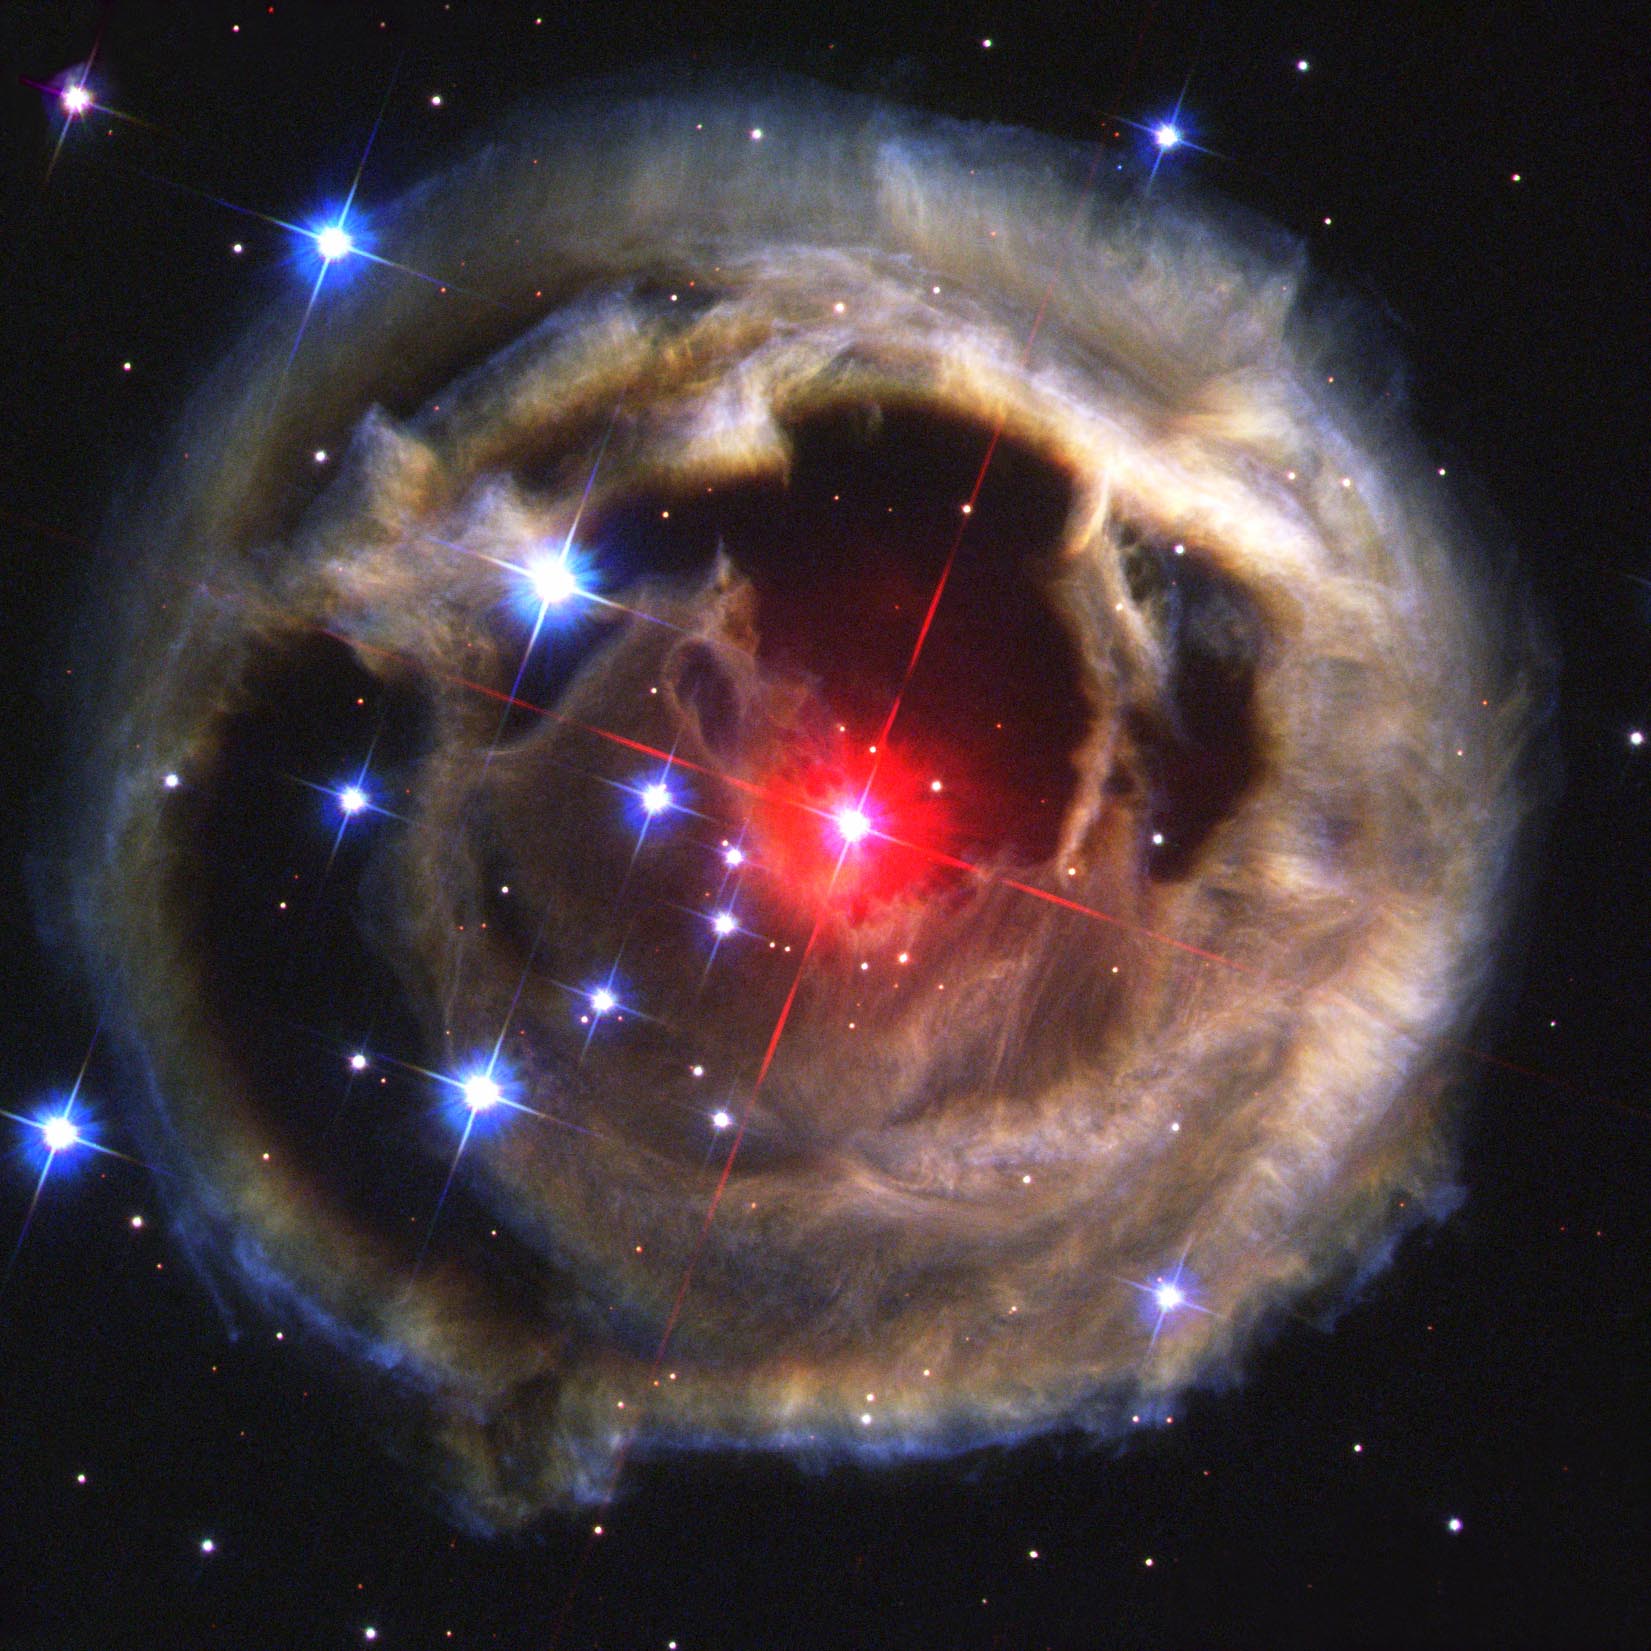 V838 Monocerotis - Wikipedia